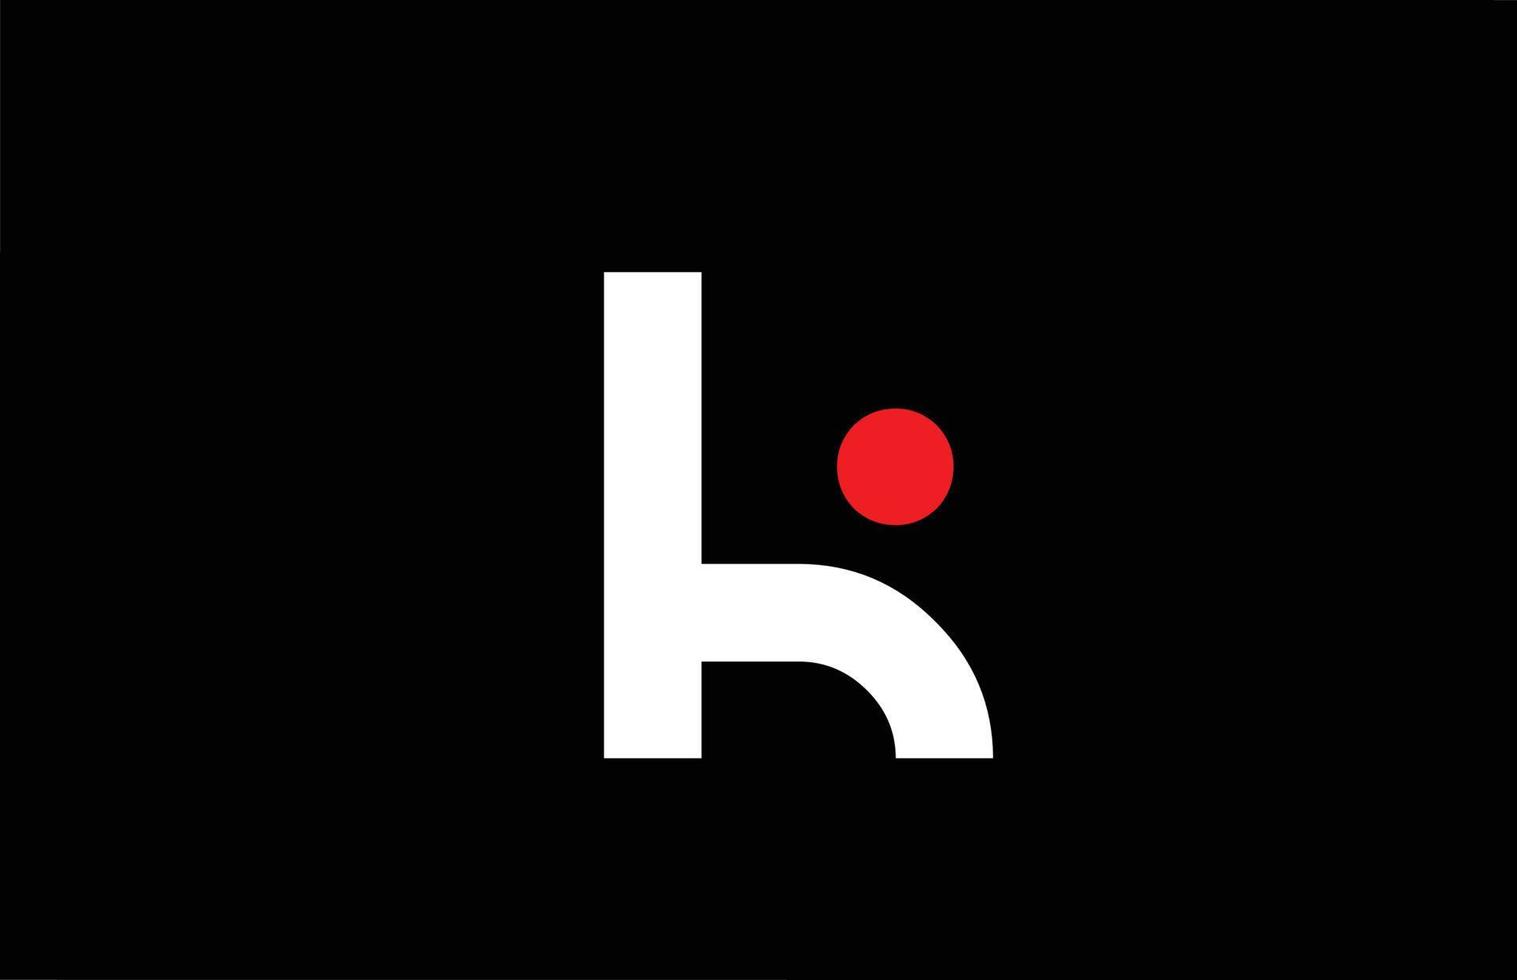 k diseño del logotipo del icono de la letra del alfabeto. plantilla creativa para empresas y negocios con punto rojo en blanco y negro vector